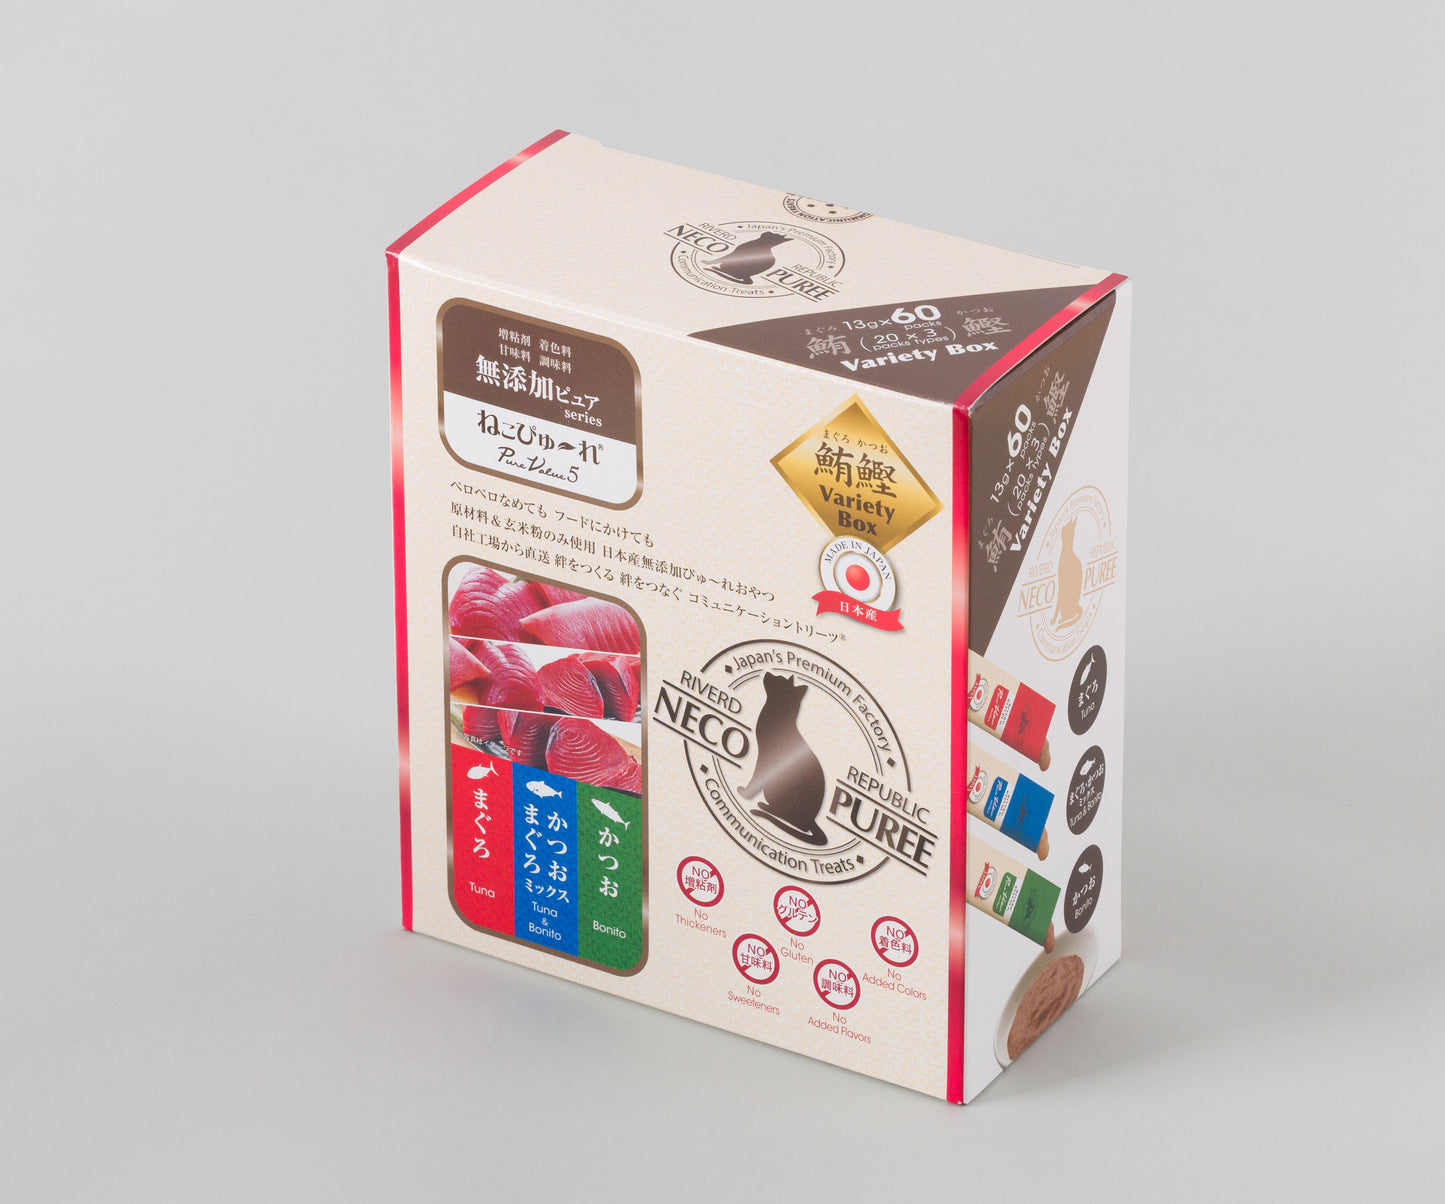 
                  
                    ねこぴゅ～れ 無添加ピュア PureValue5 Variety Box 鮪鰹 <まぐろ/かつお/まぐろかつお> 60本
                  
                